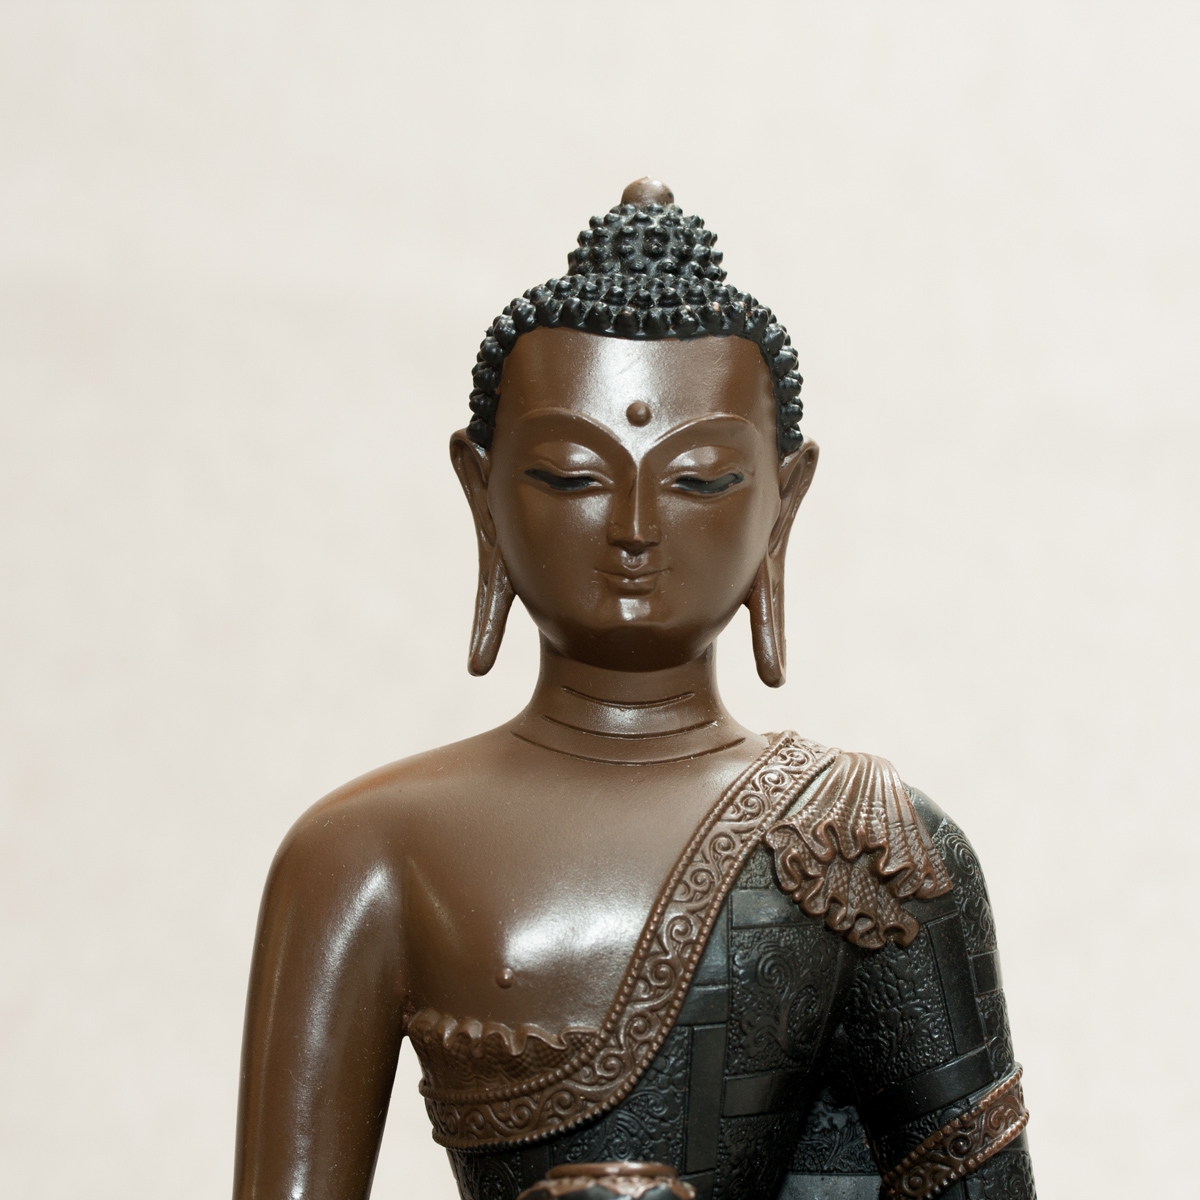 Статуэтка Будды Шакьямуни, 21 см